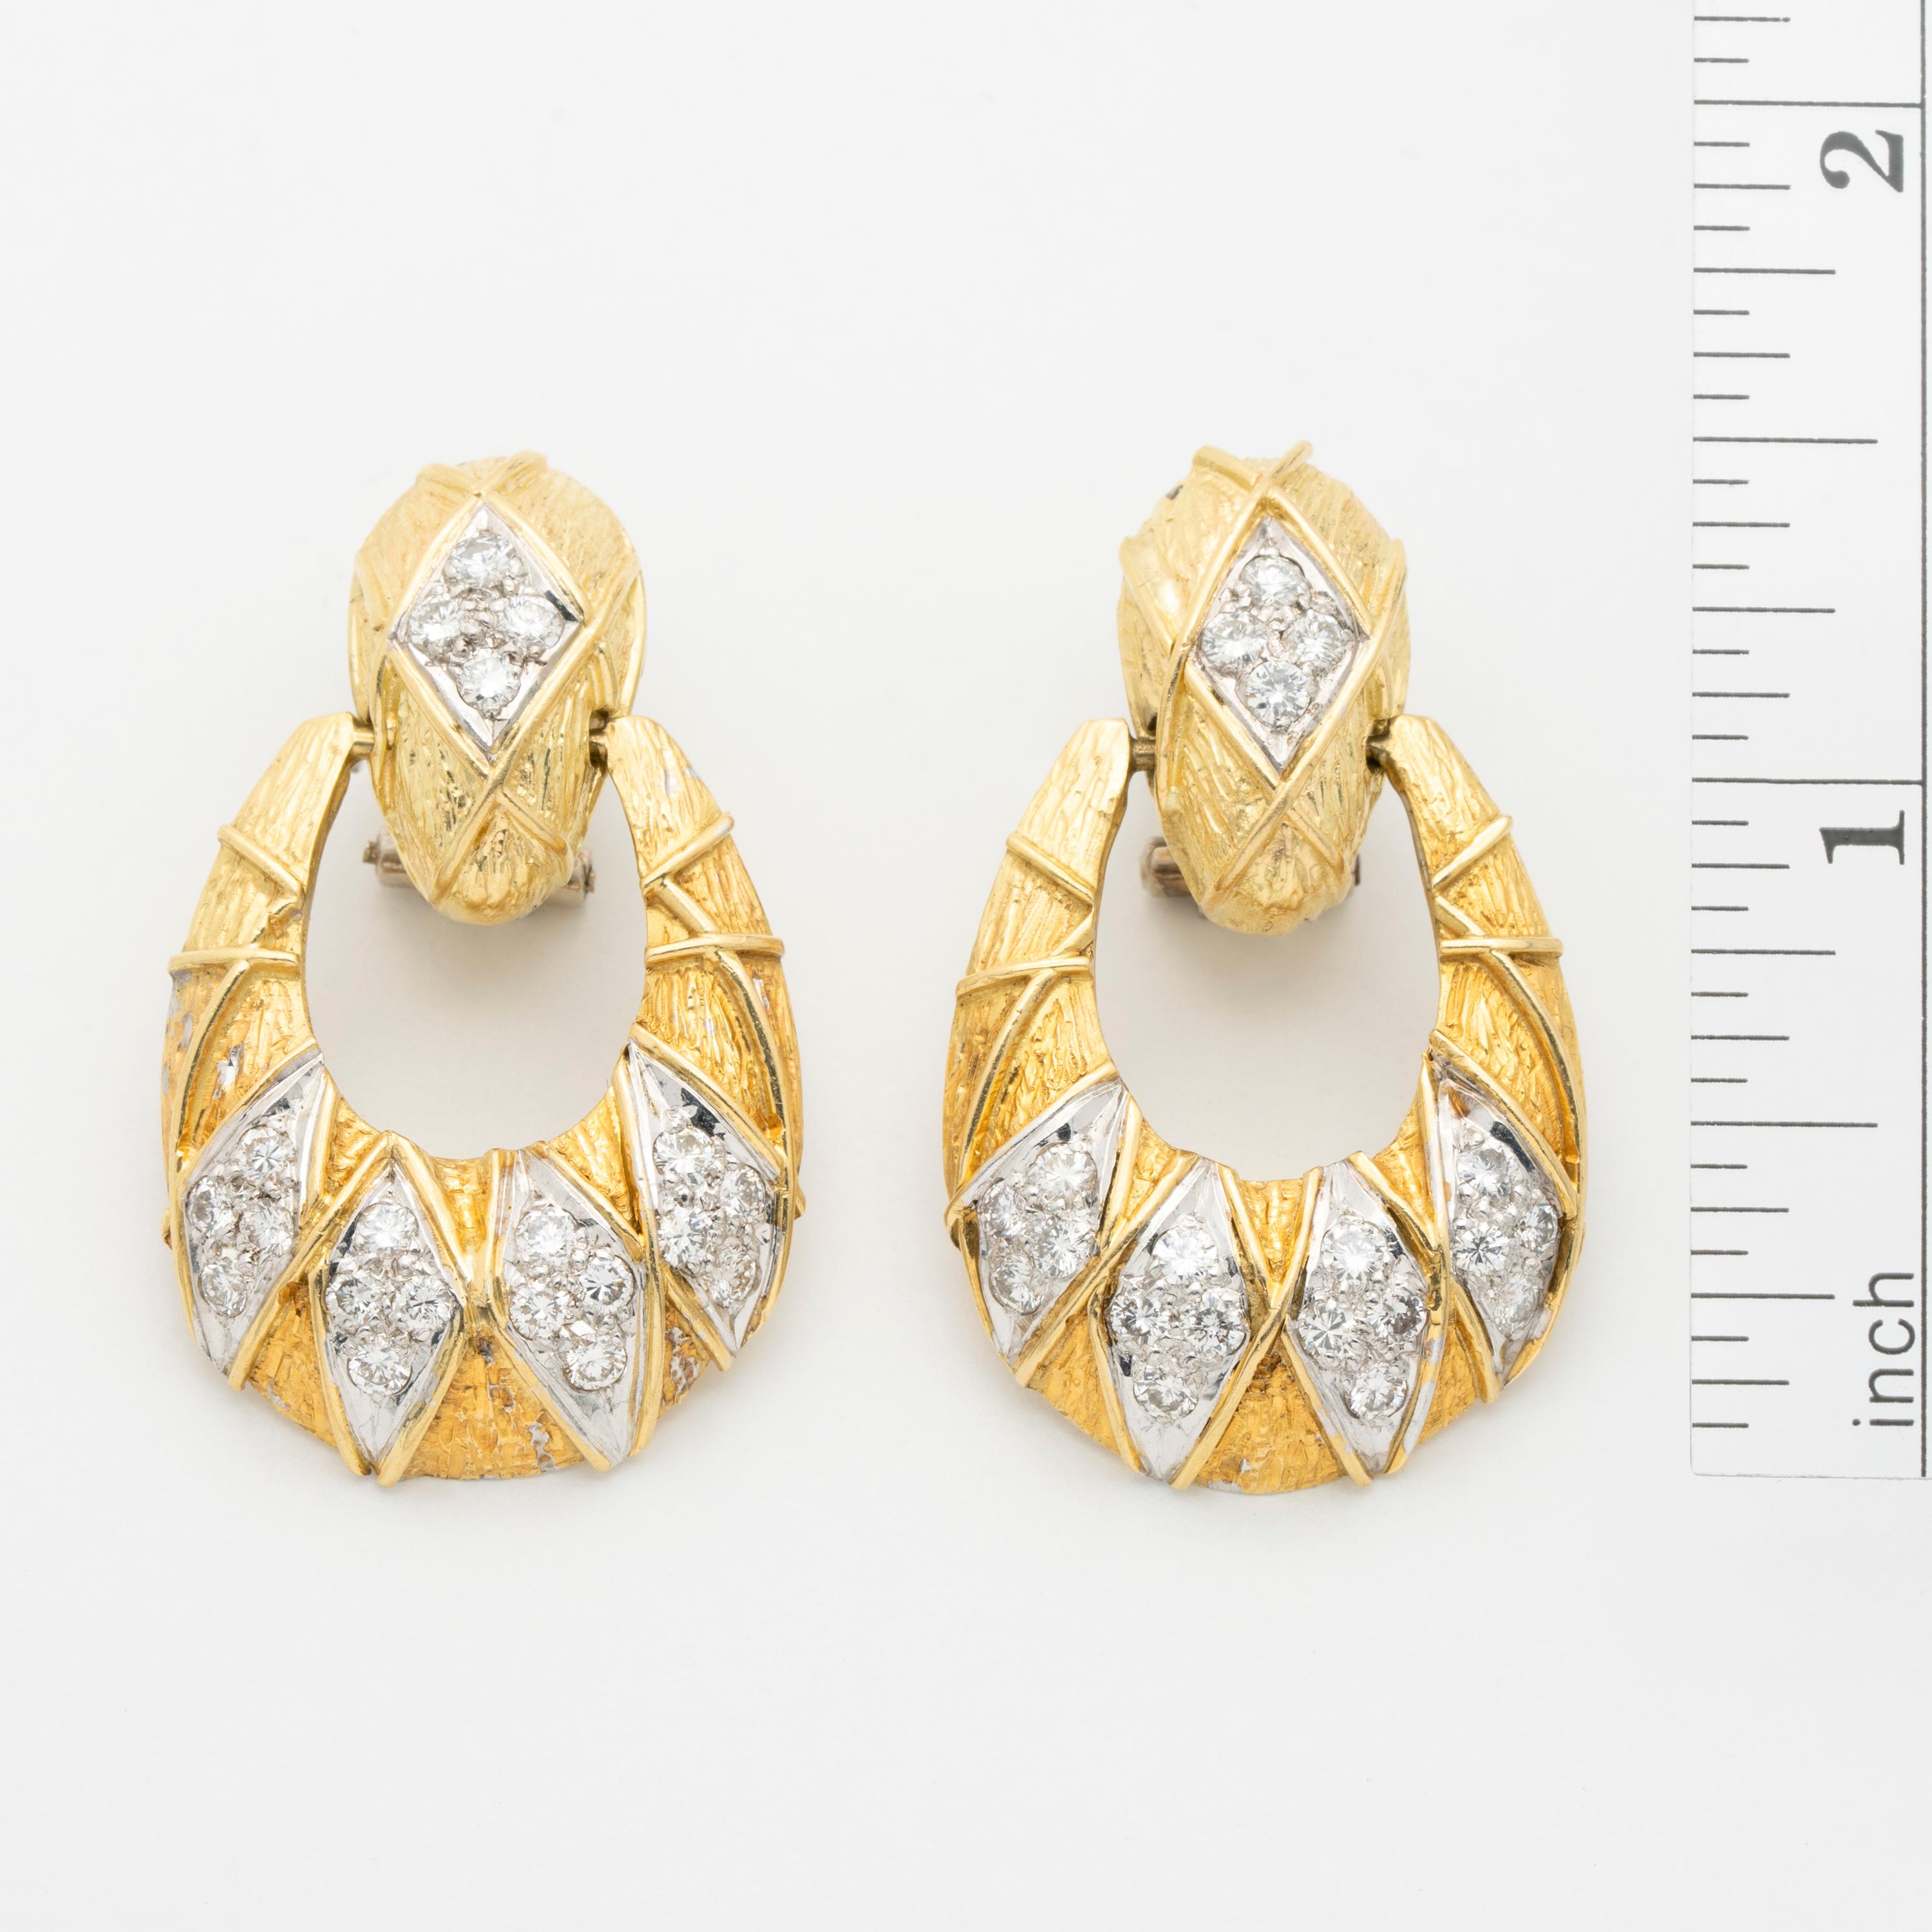 Zeitraum: Vintage By
Jahr: ca. 1980
MATERIAL: 18K Gelbgold, 2,0ct Diamant
Gewicht: Jeder Ohrring wiegt 11,5 Gramm
Länge der einzelnen Ohrringe von Post ist 1,5 Zoll / 3,81 cm Breite: 1 Zoll / 2,54 cm
Zustand: Tadellos Vintage By
Hergestellt in den